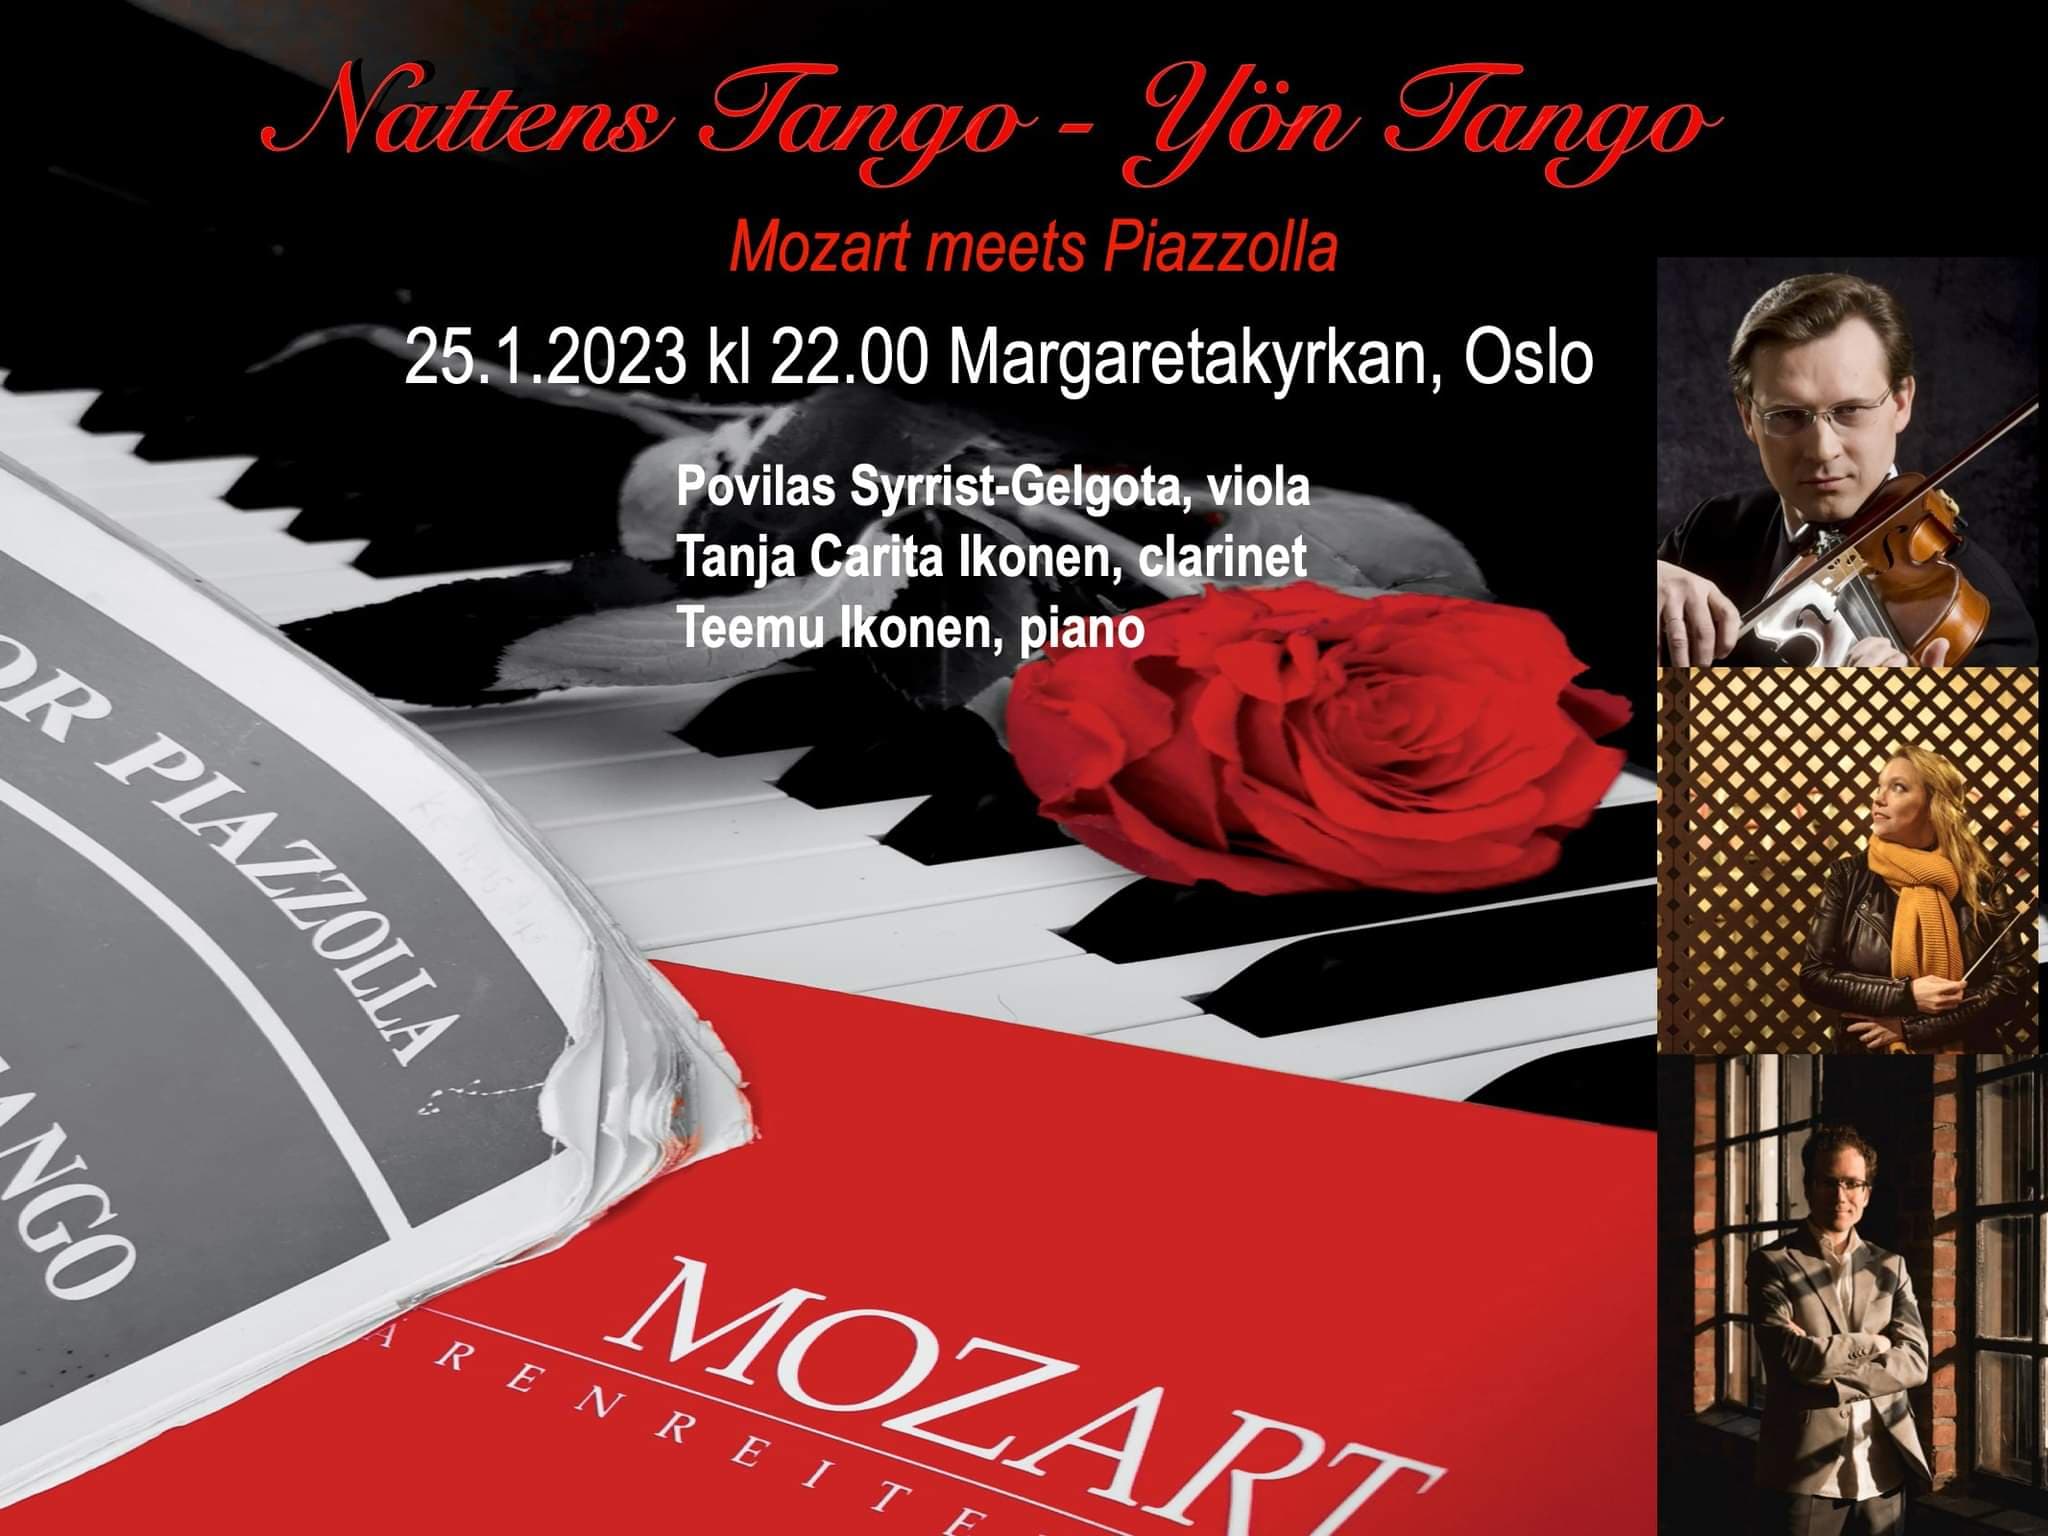 Reklambild av kammarkonserten med foton av musikerna och texten Nattens Tango – Yön Tango – Mozart meets Piazzolla.